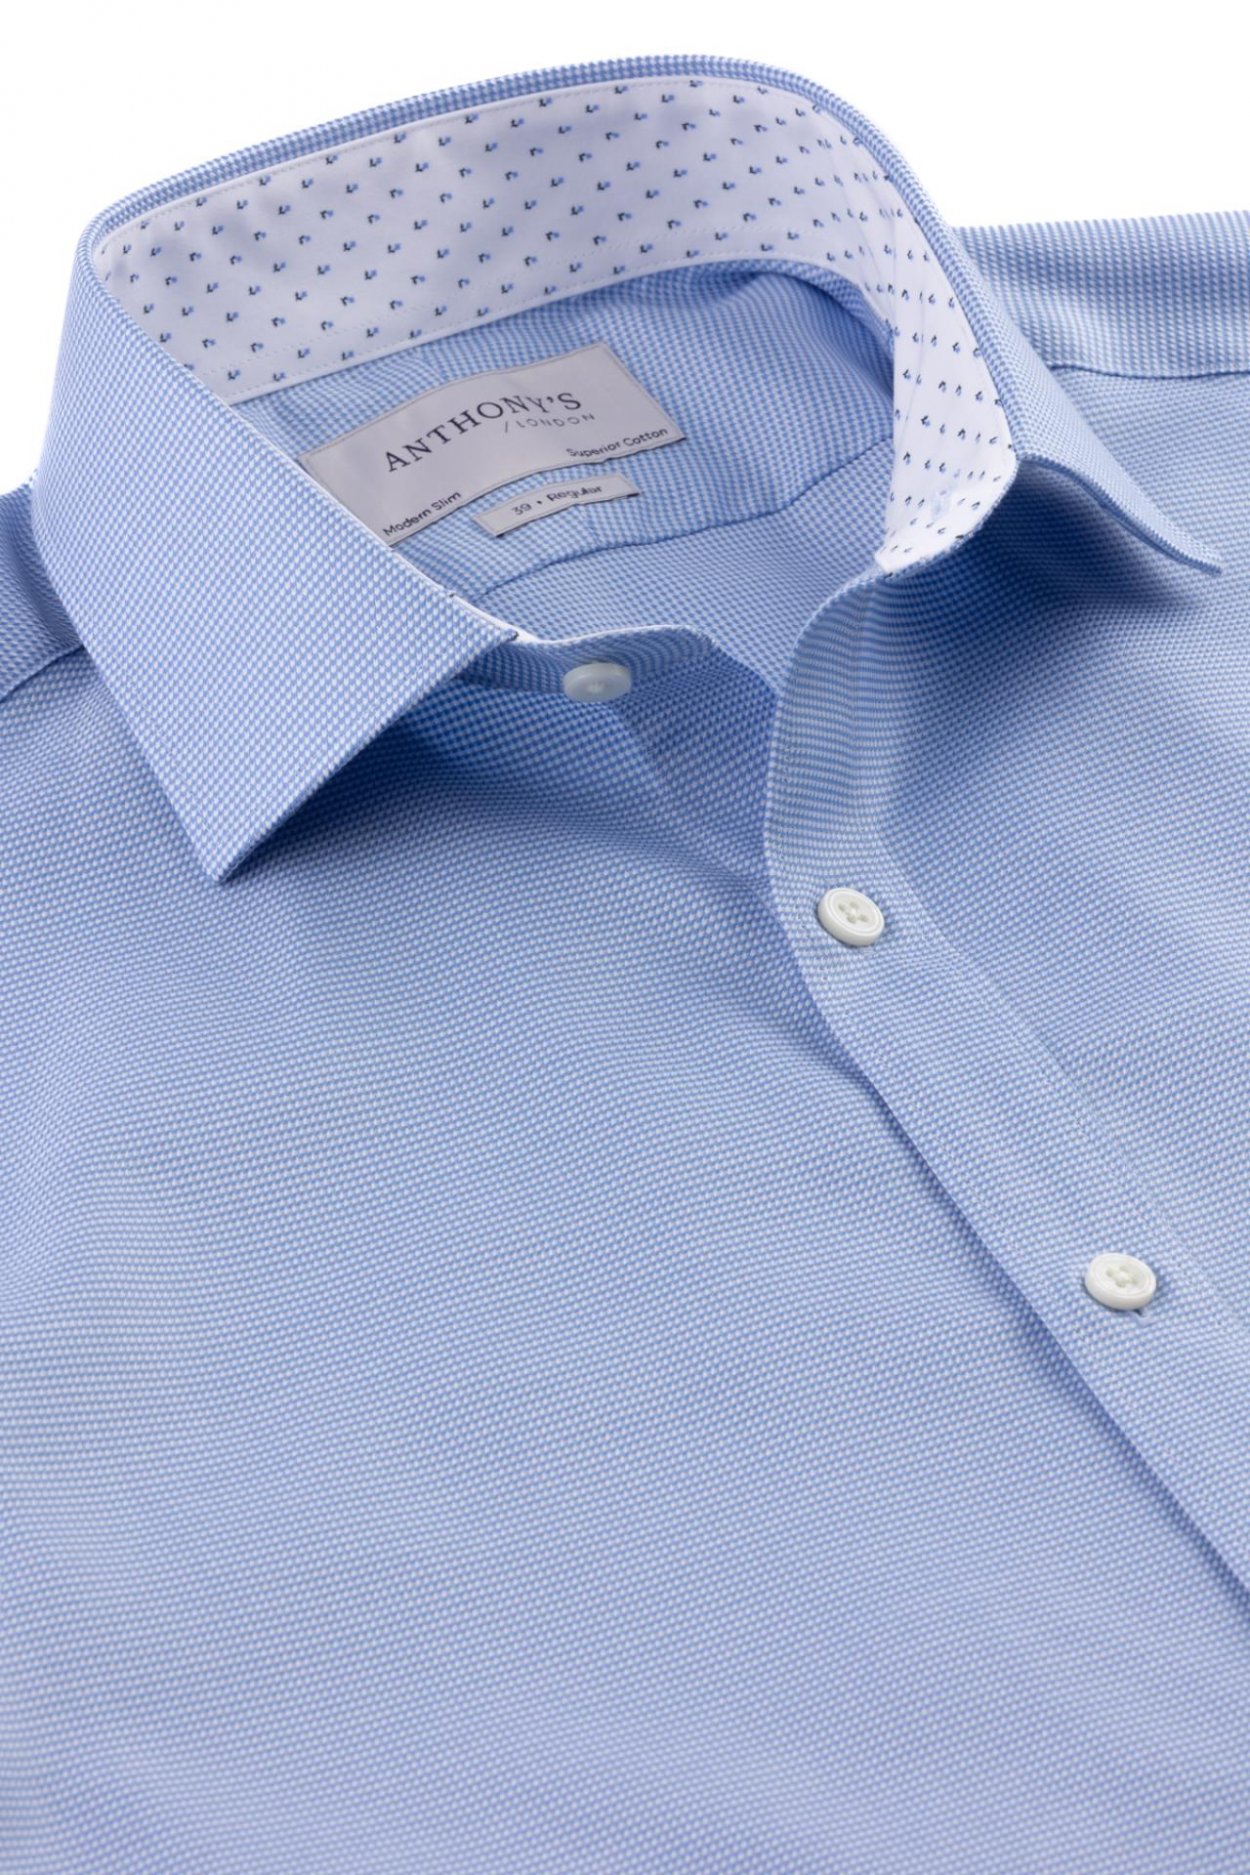 Pánská světle modrá košile s jemným vzorem a barevným detailem